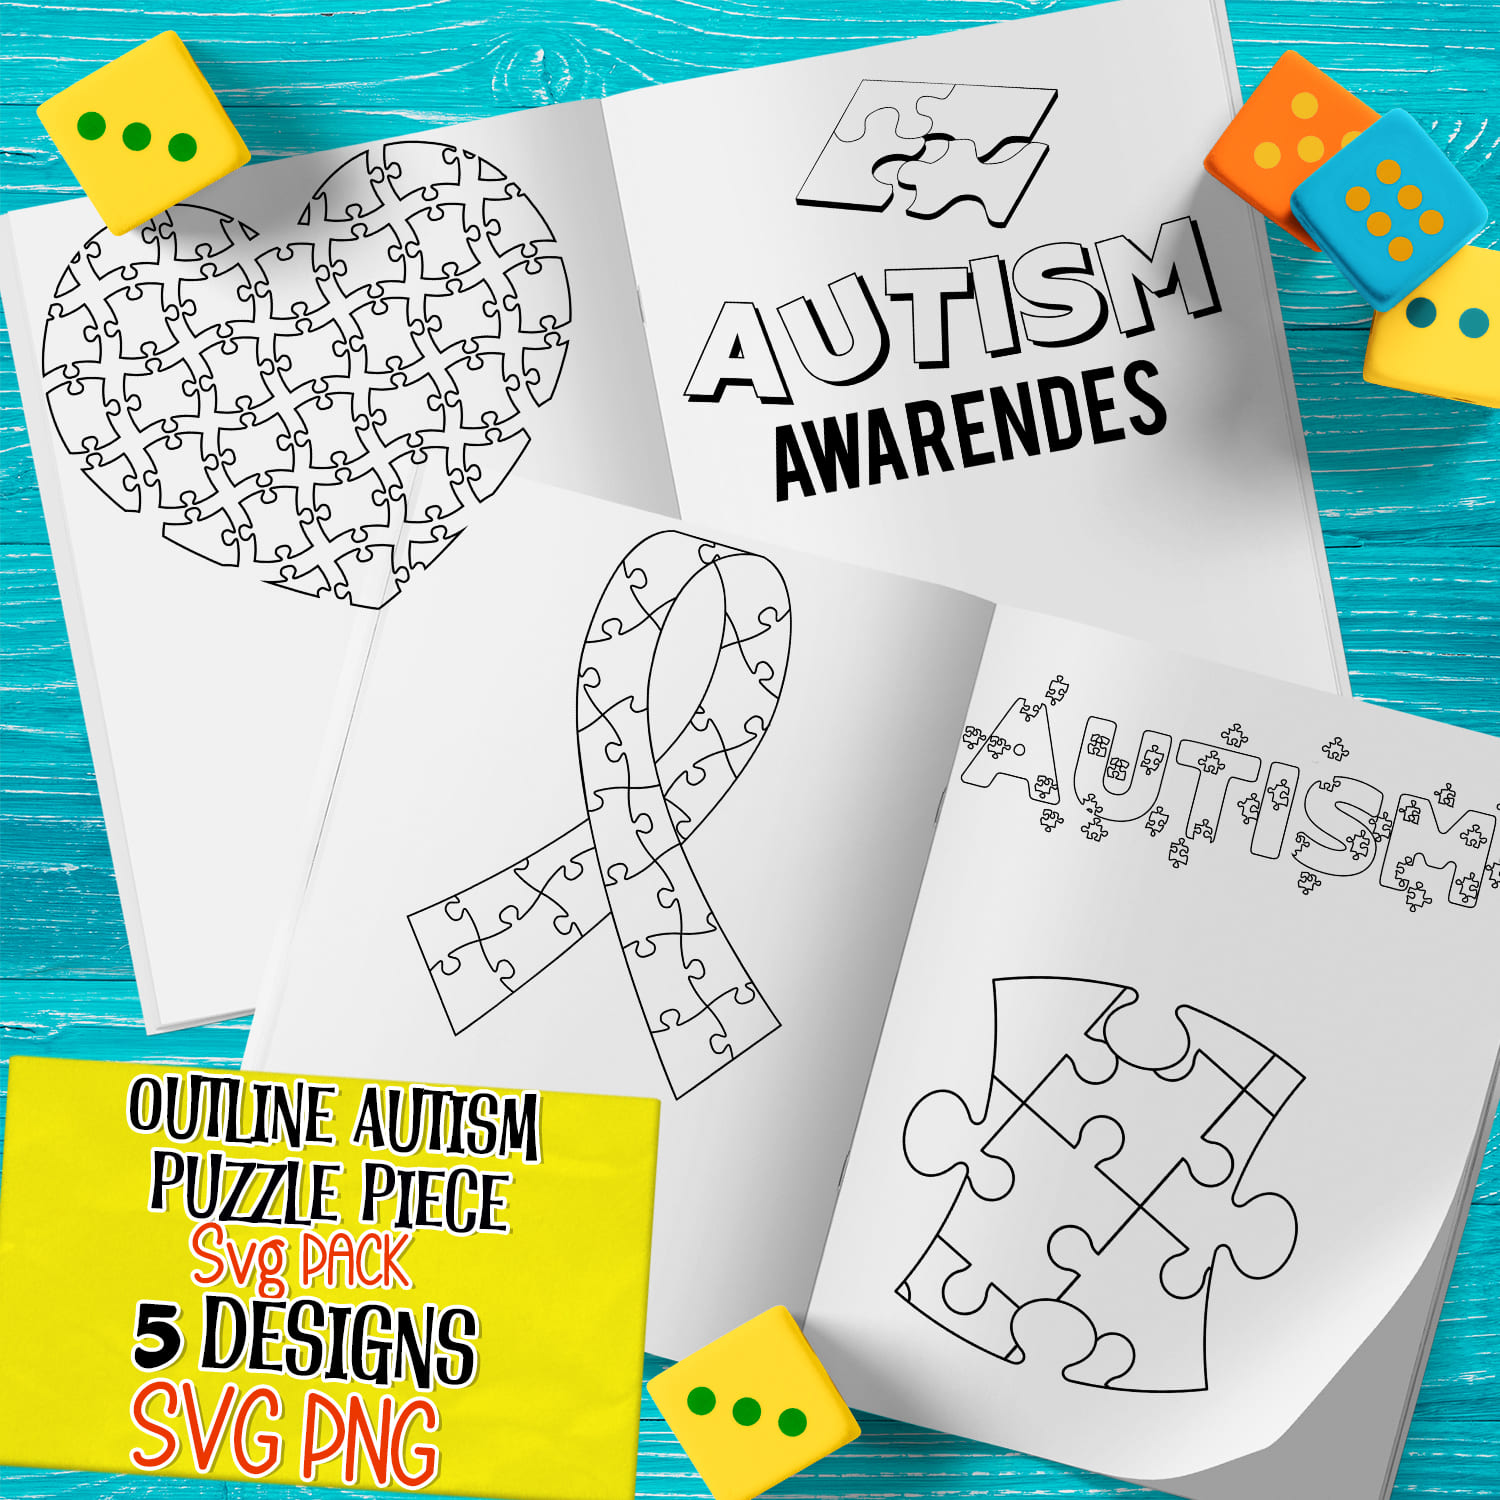 Outline autism puzzle piece svg - main image preview.